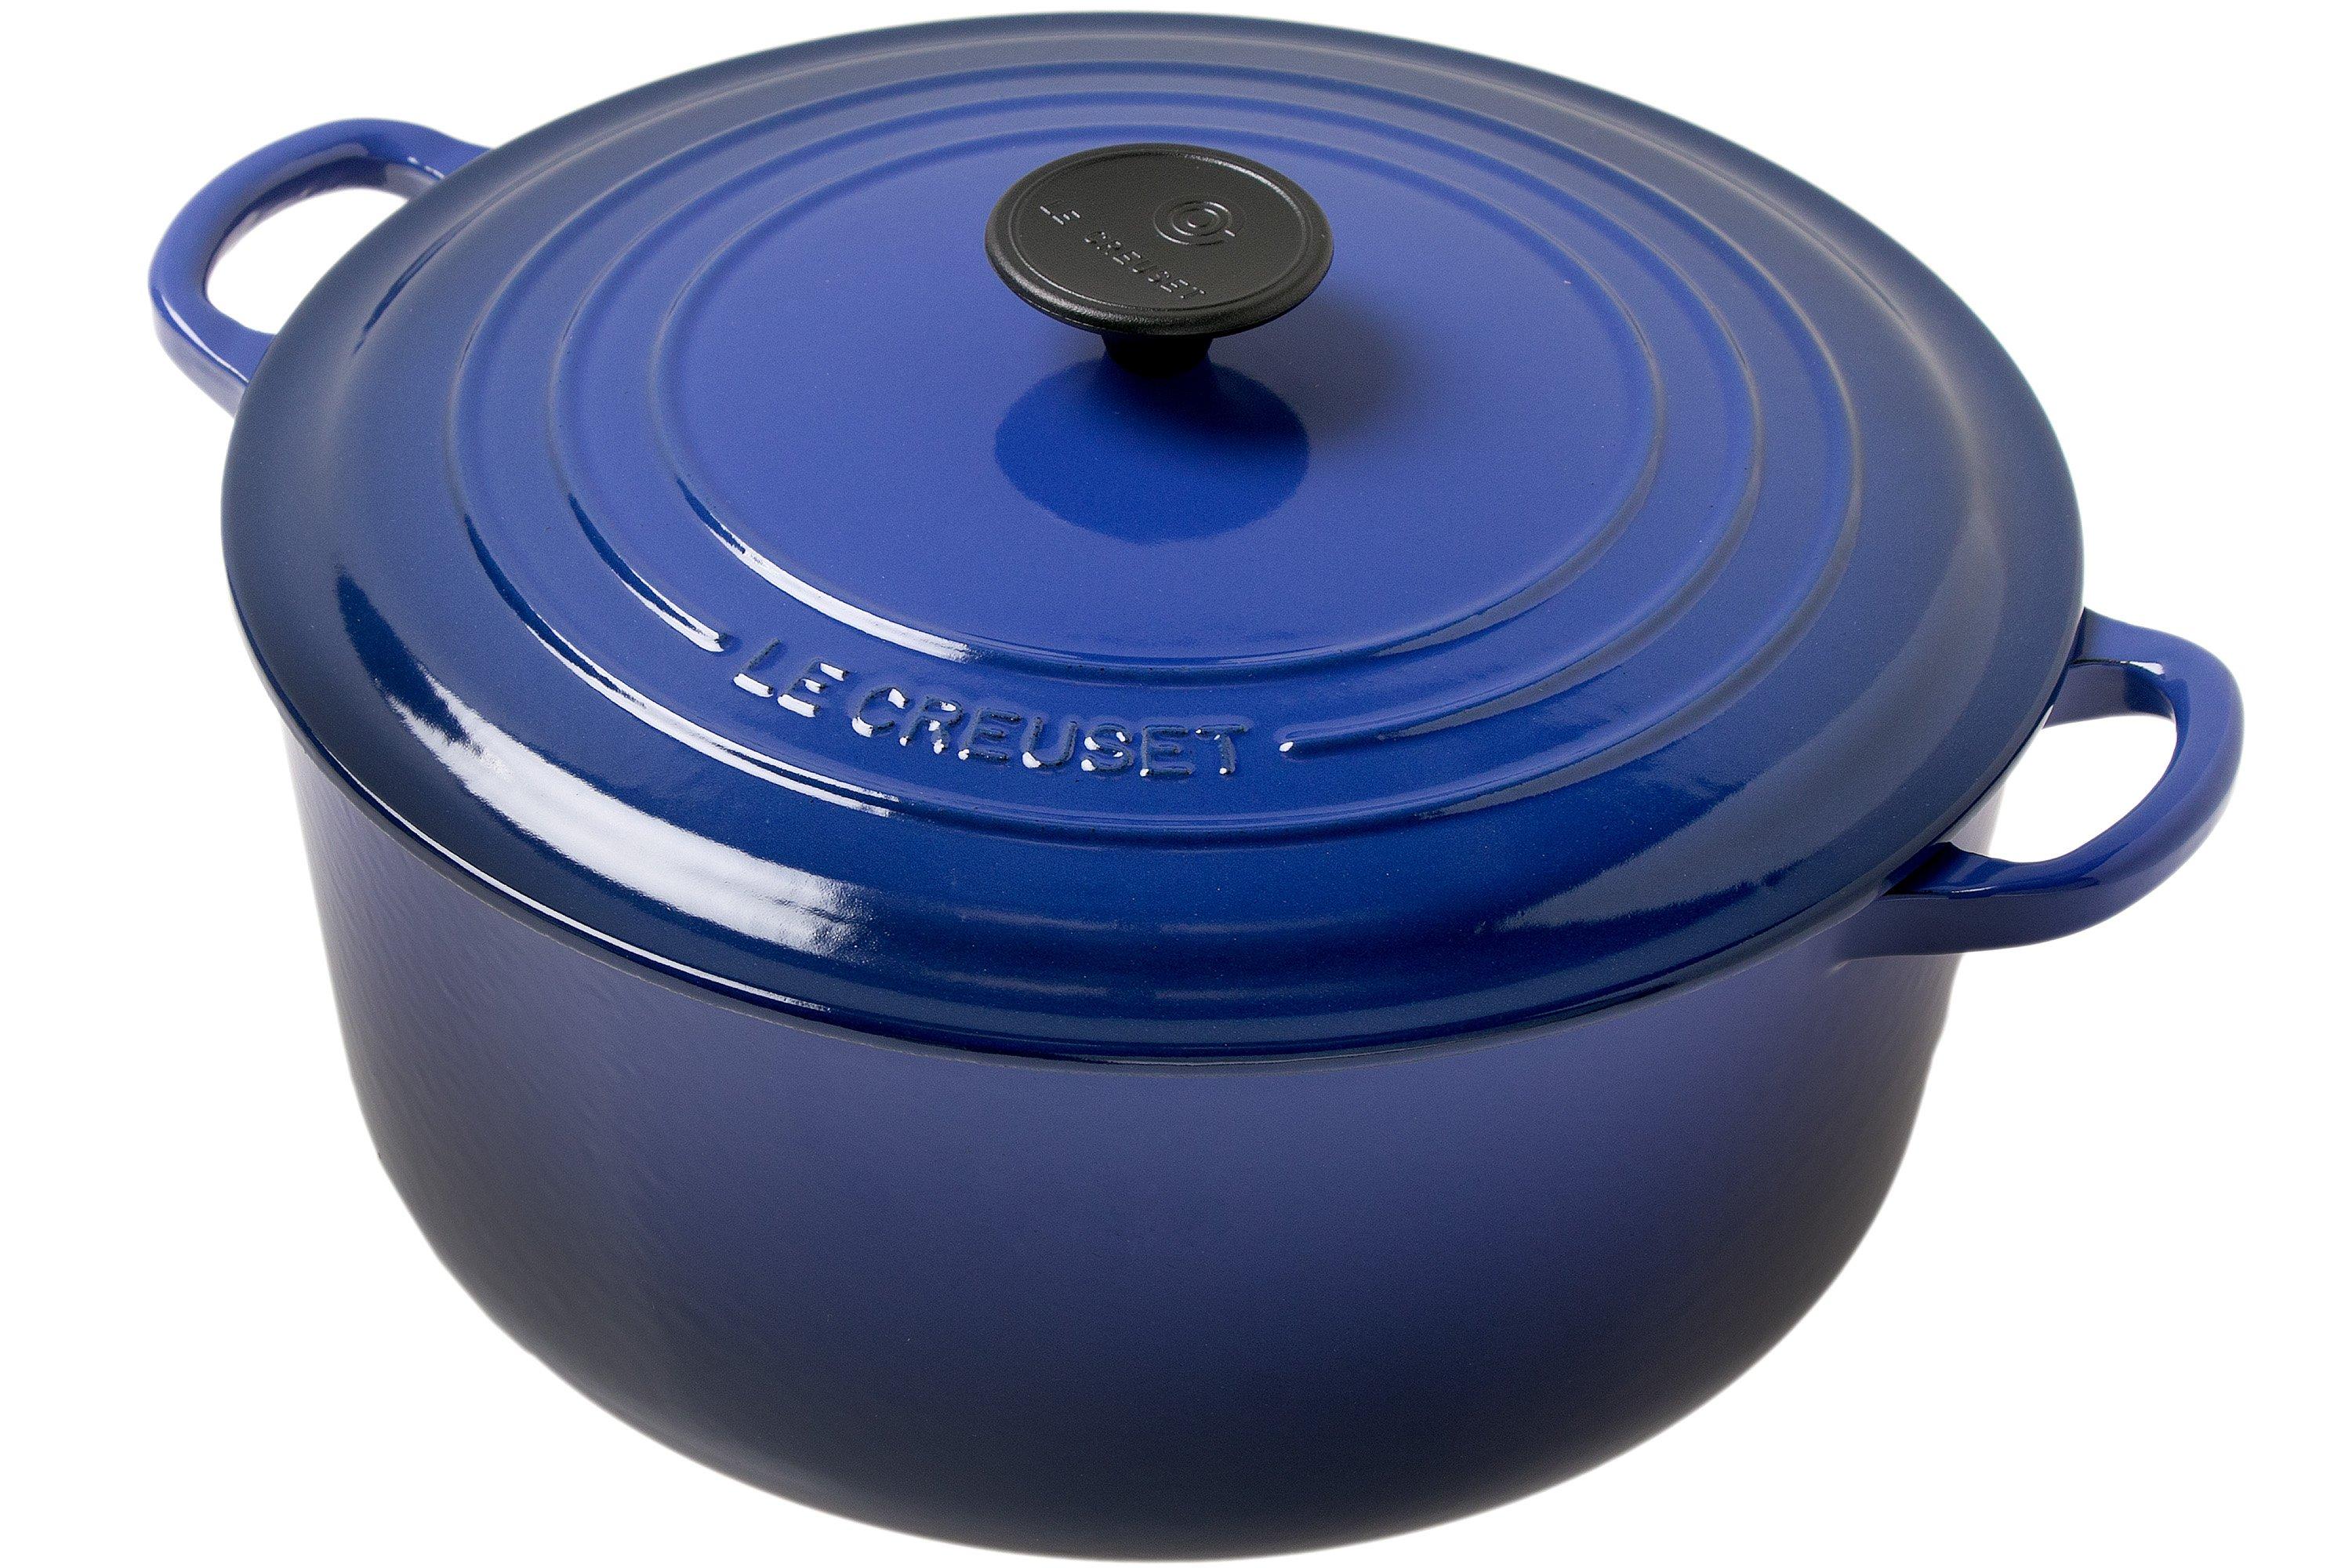 Le Creuset Tradition 25001286302461 casserole 28 cm, blue